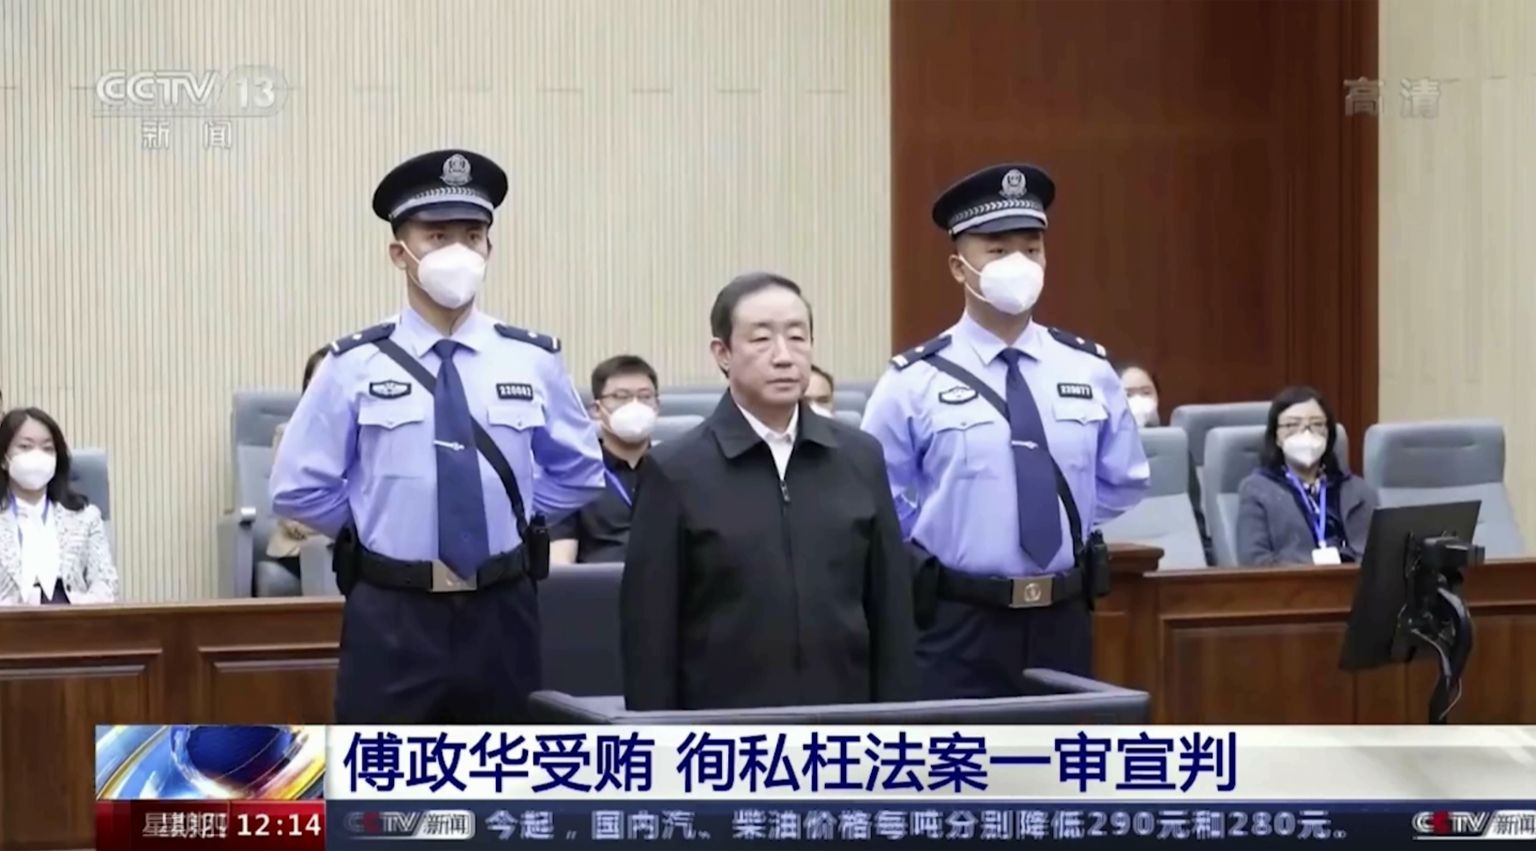 Hiina endine justiitsminister Fu Zhenghua kohtus.